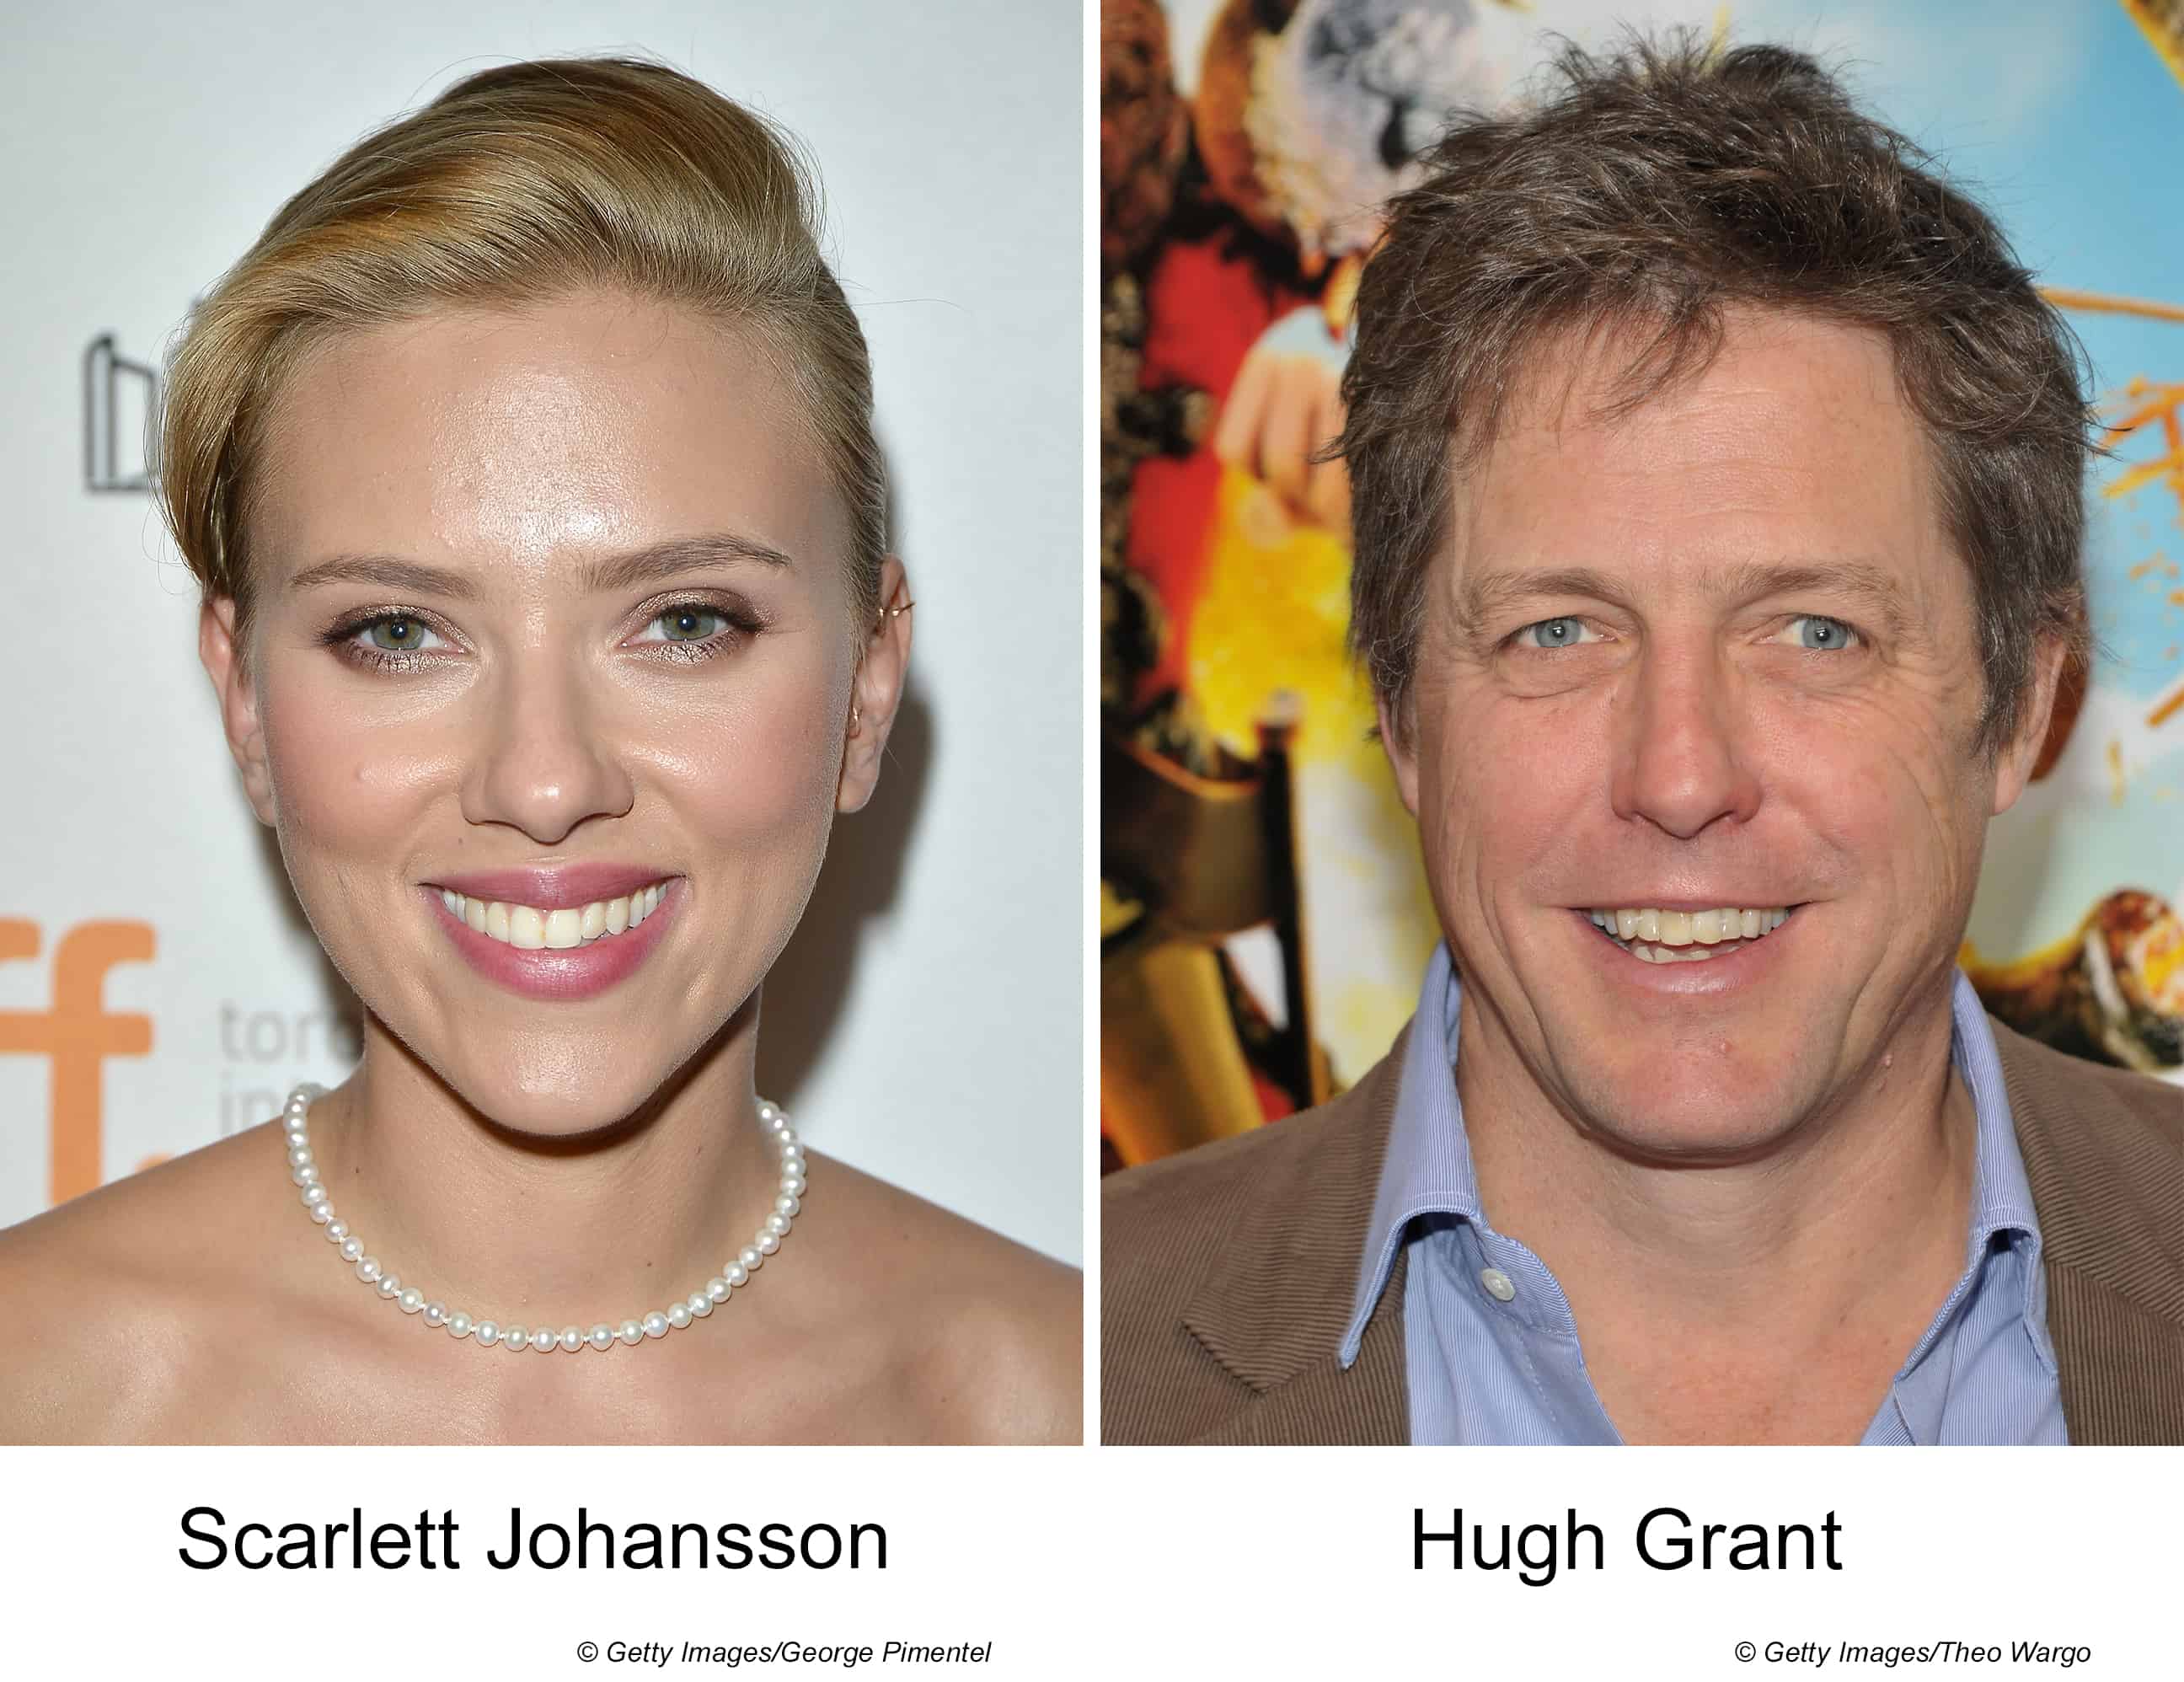 Scarlett Johansson and Hugh Grant